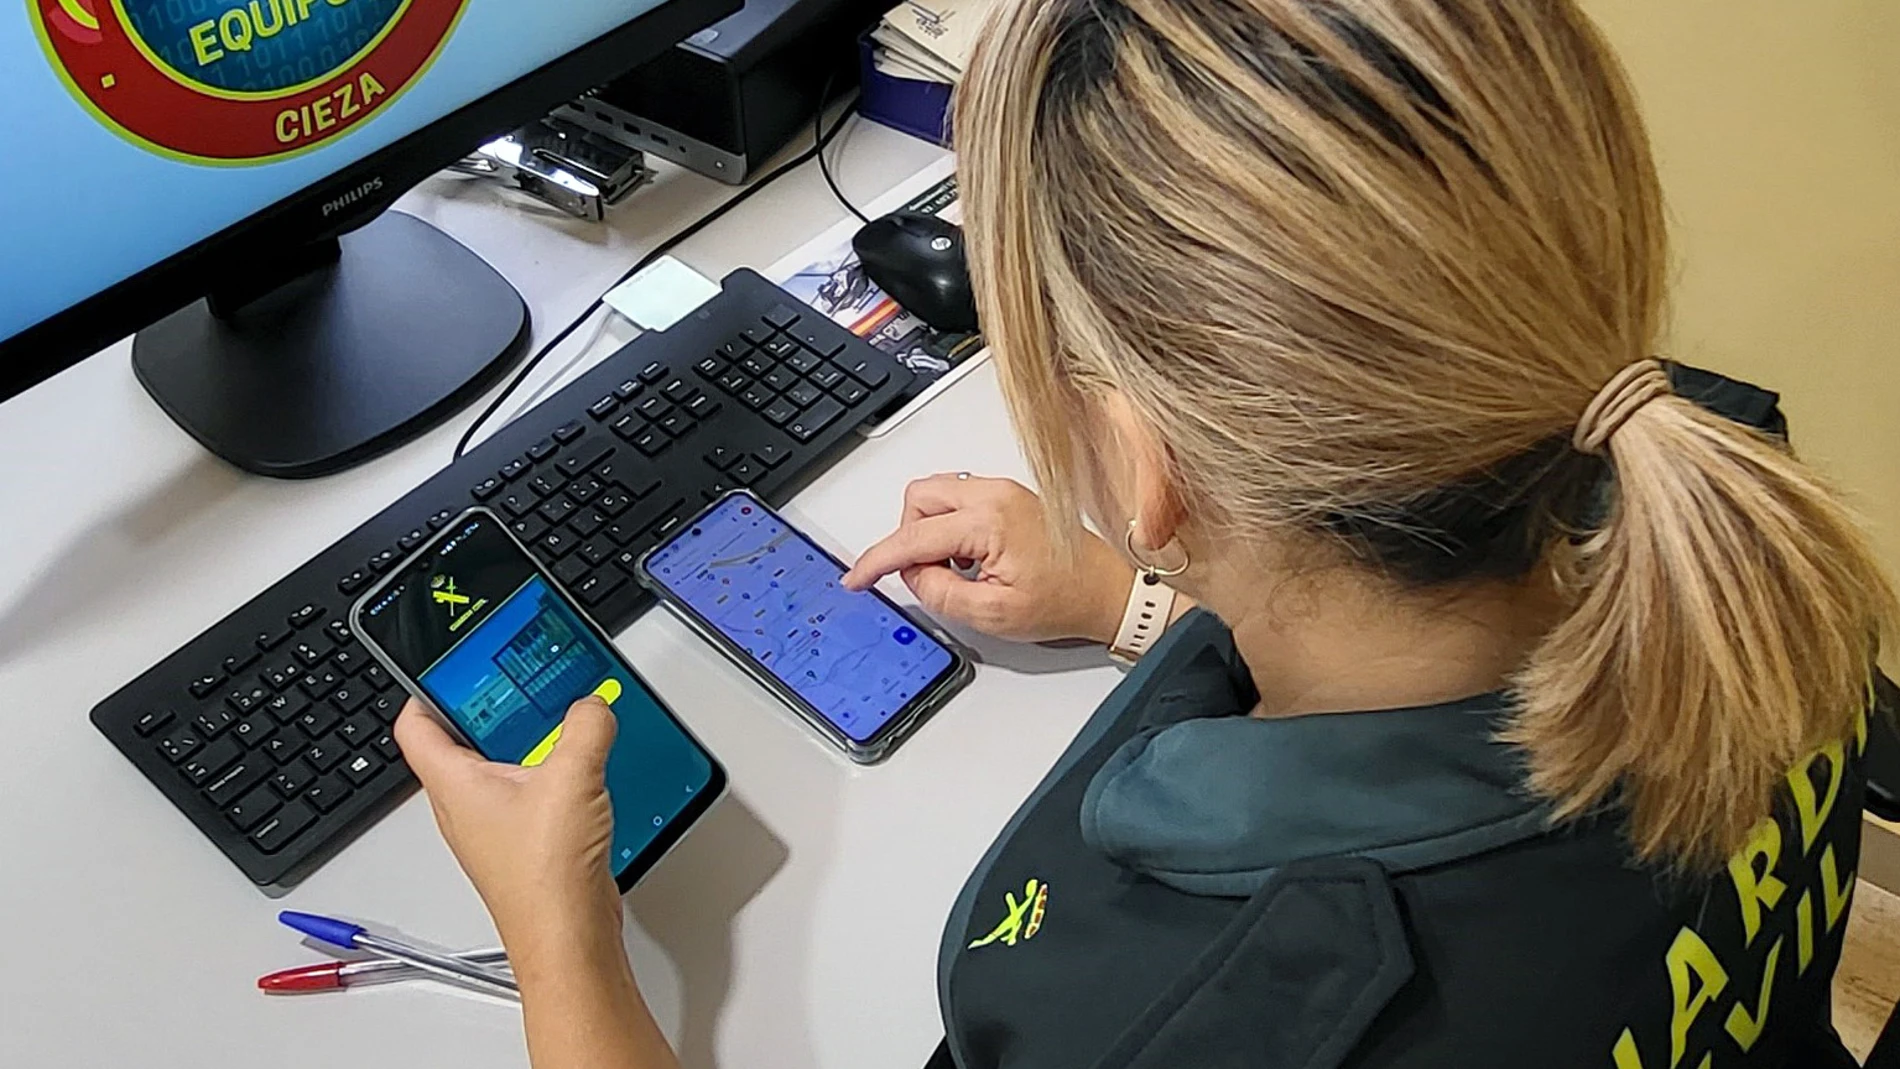 La Guardia Civil recupera 3.500 euros en poder de un ciberestafador, a través del método conocido como Spoofing telefónico, con el que se obtiene acceso a las cuentas bancarias de forma fraudulenta